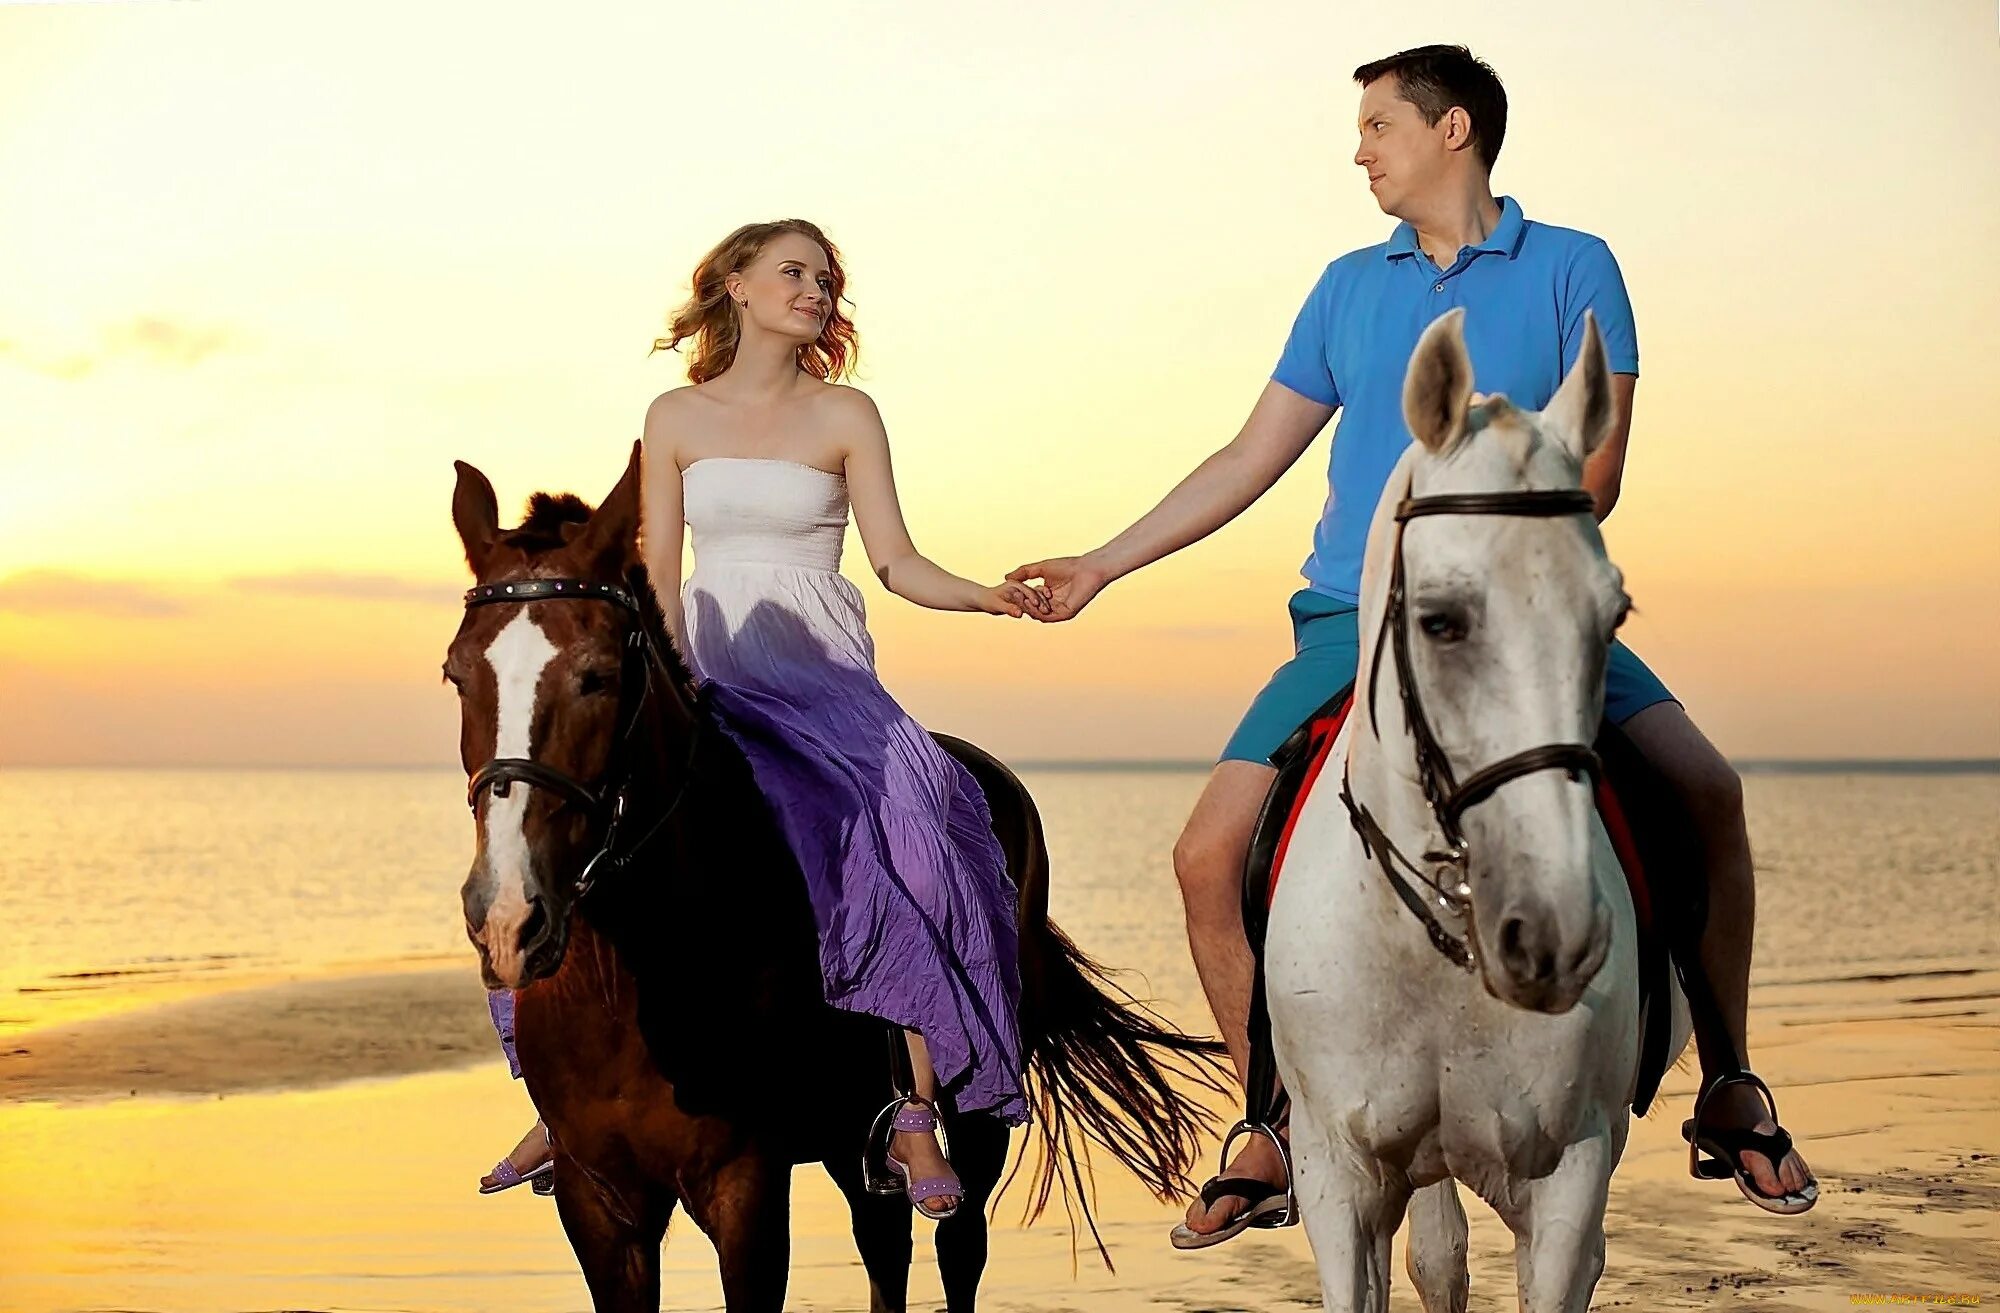 Мужчина лошадь в браке. Мужчина и женщина на коне. Мужчина и женщина верхом на лошадях. Пара лошадей. Влюбленные лошади.